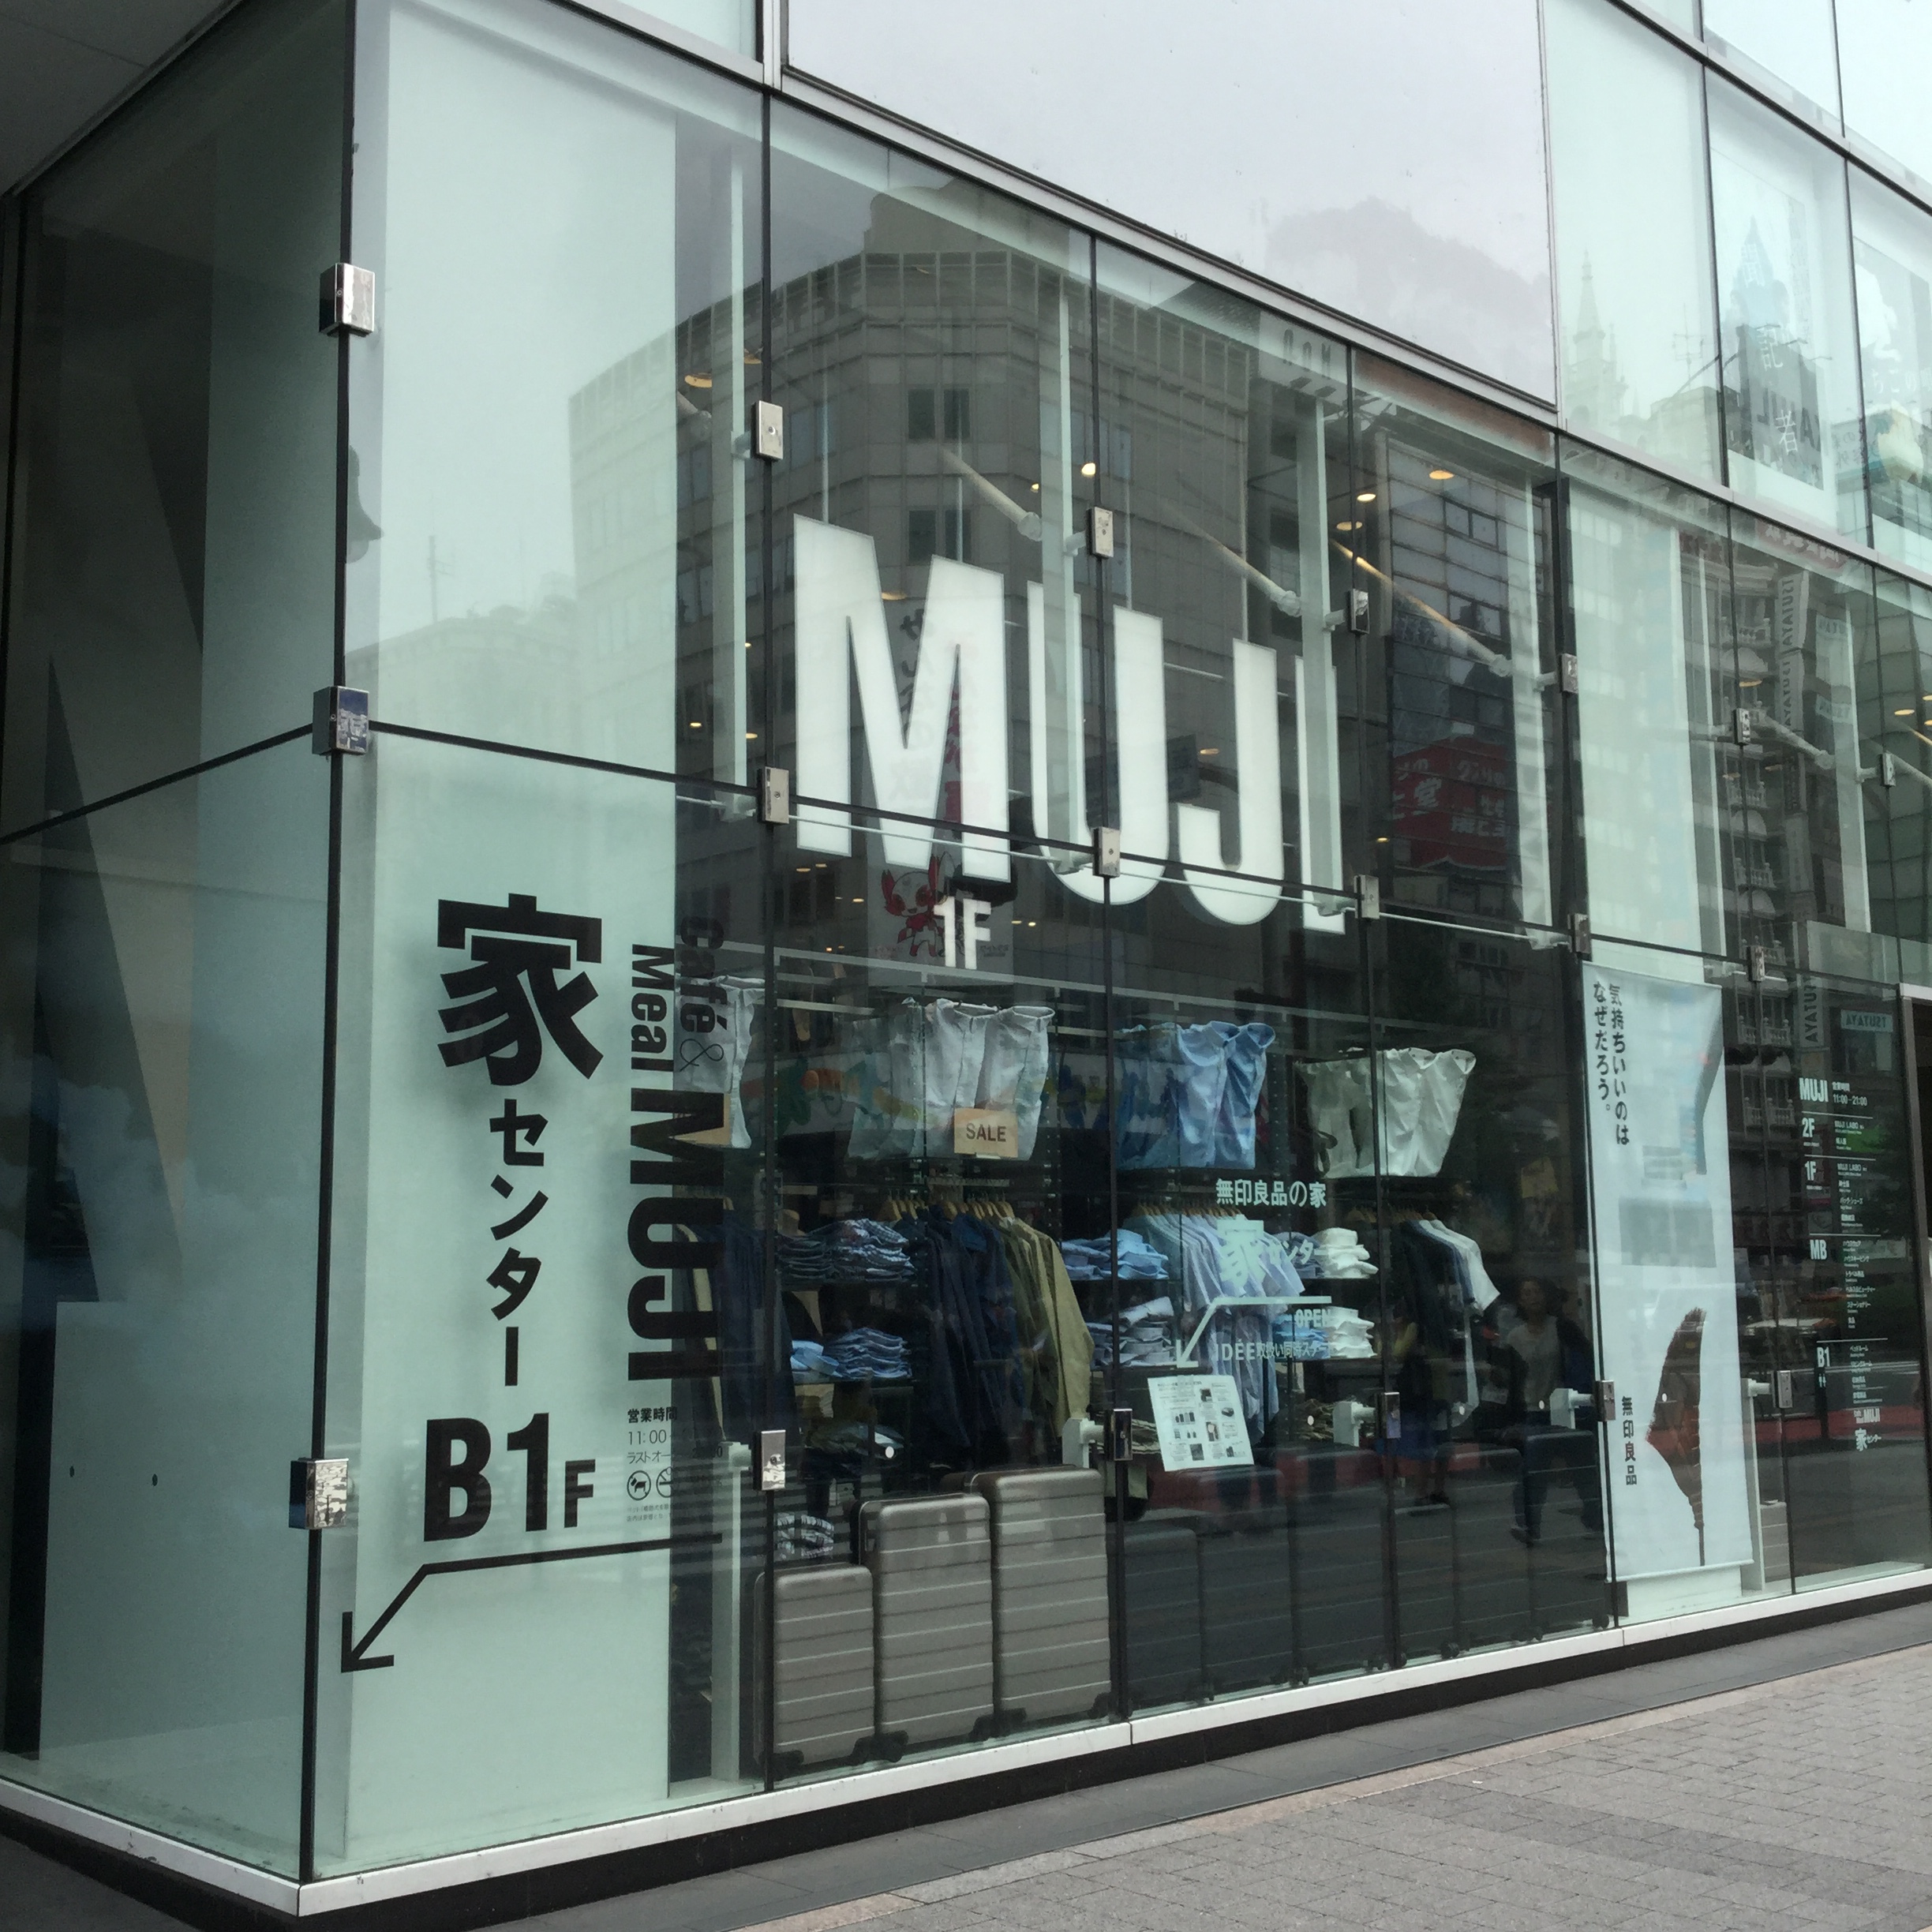 ルミネ新宿 雰囲気があるお店です Muji新宿 無印良品